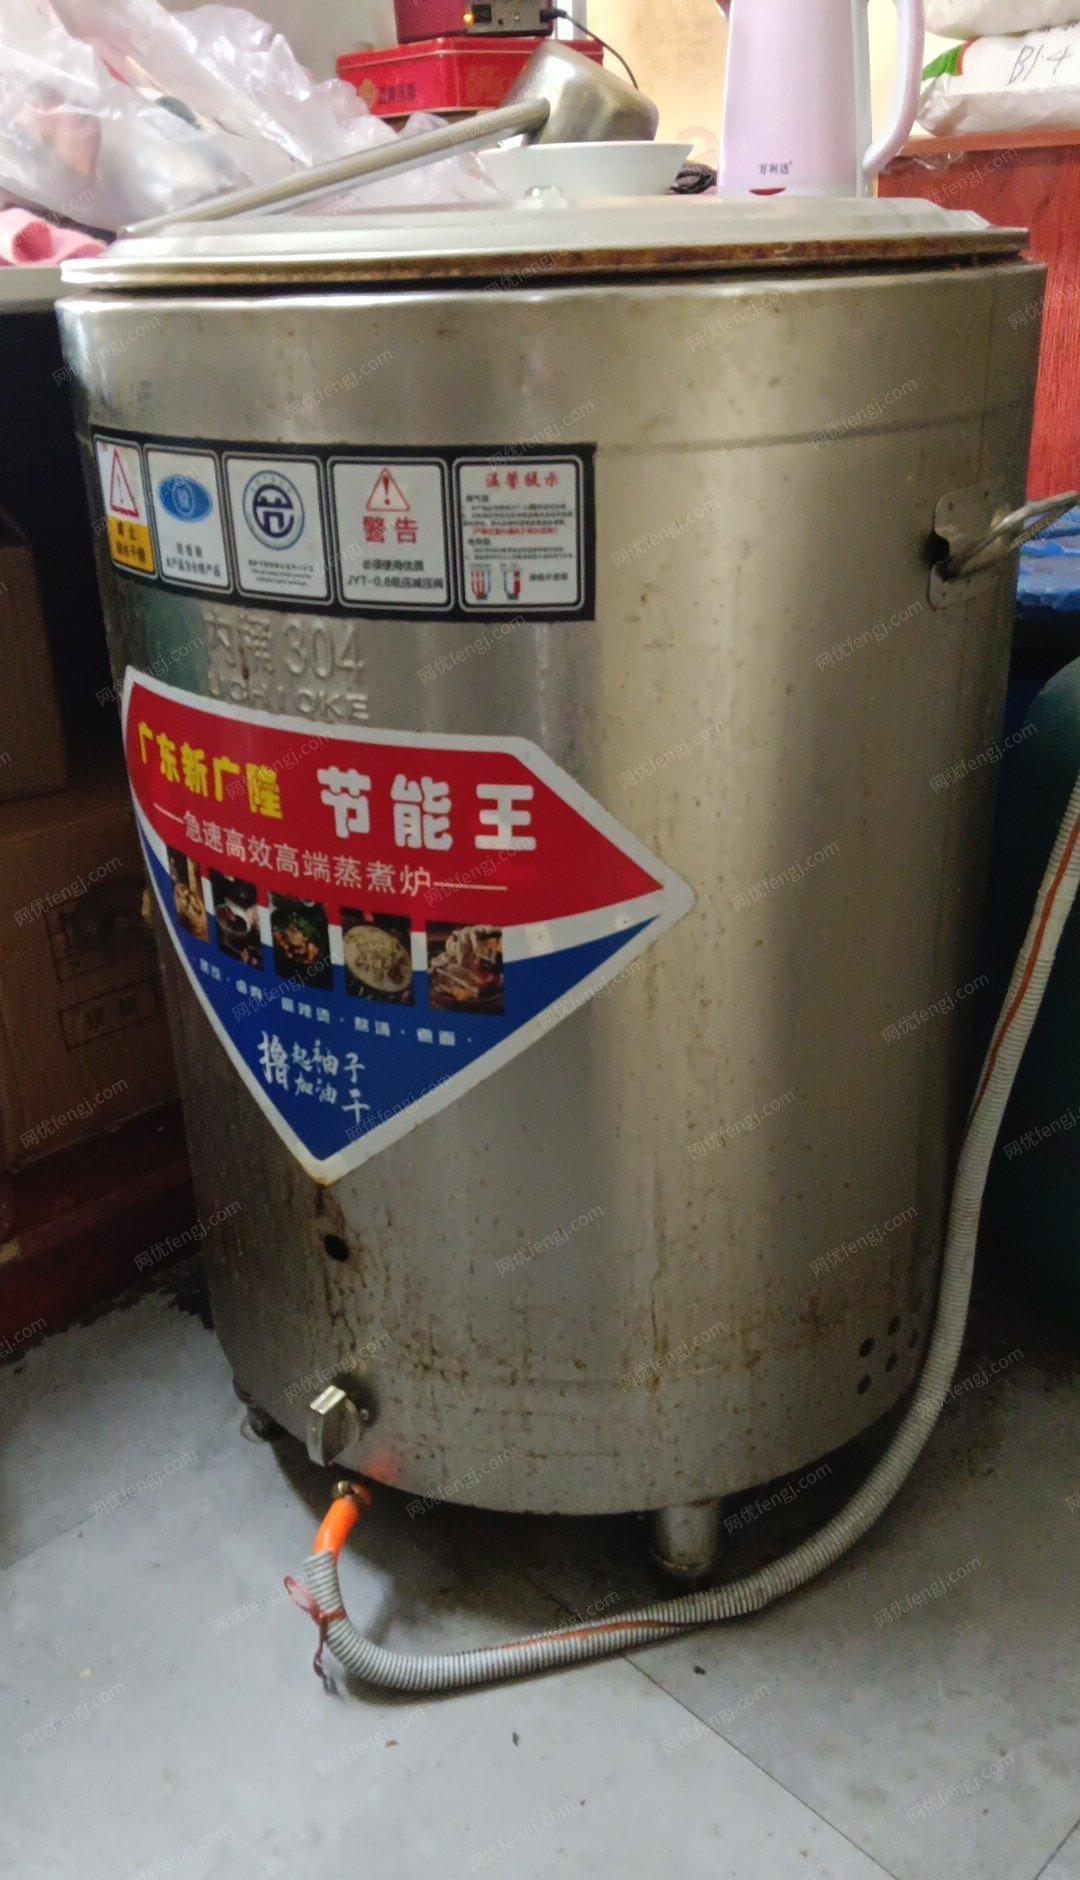 重庆江北区个人99新50型九鼎王平底燃气煮面炉出售